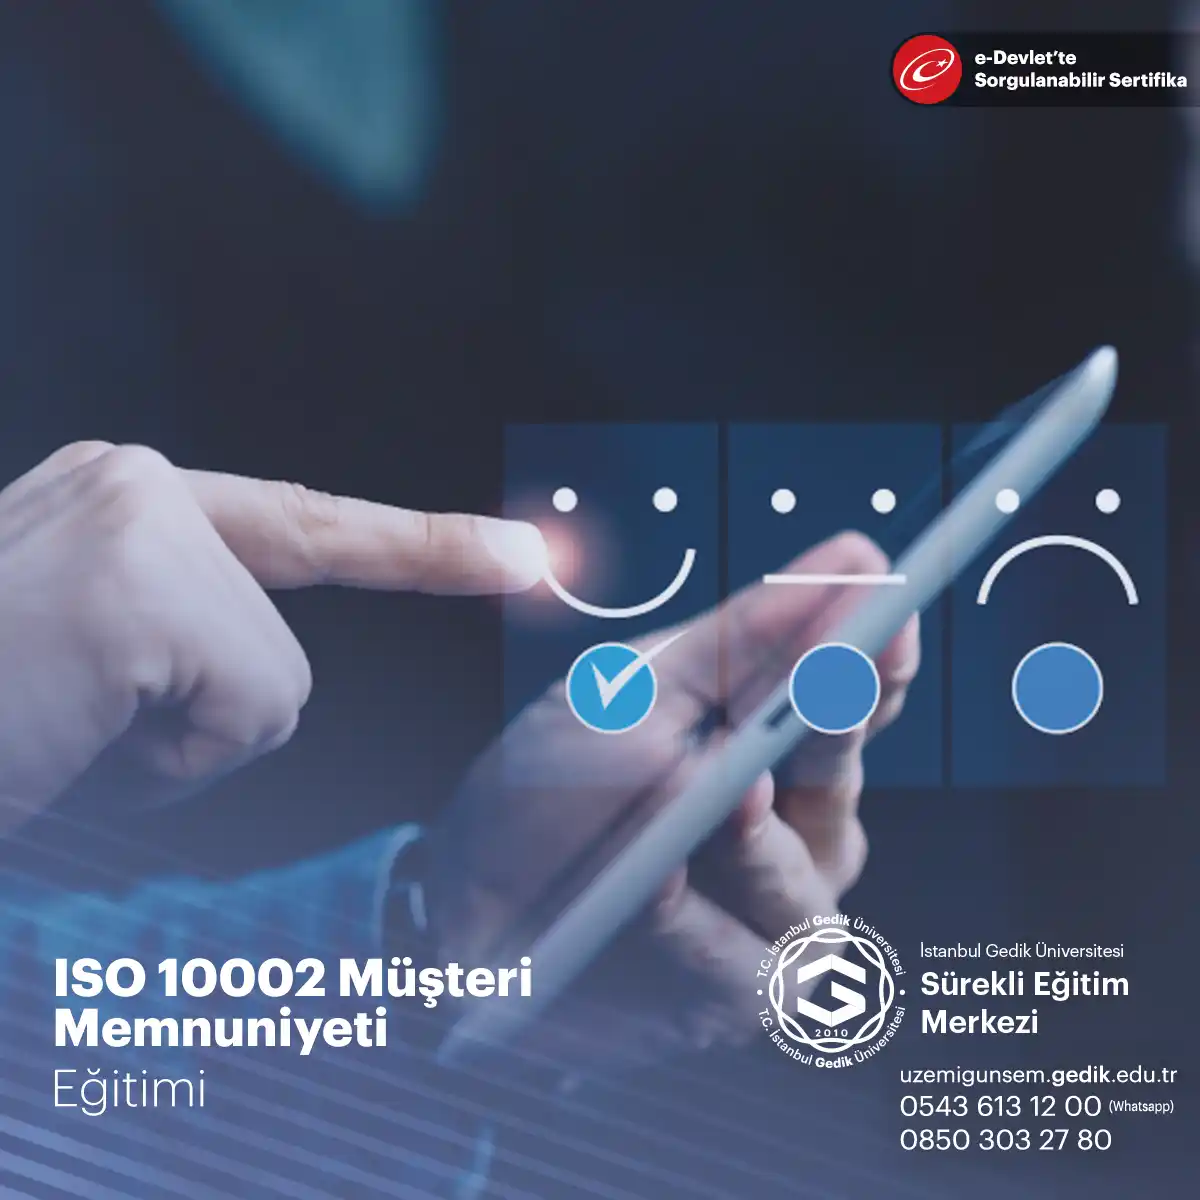 ISO 10002 Müşteri Memnuniyeti Sertifika Programı